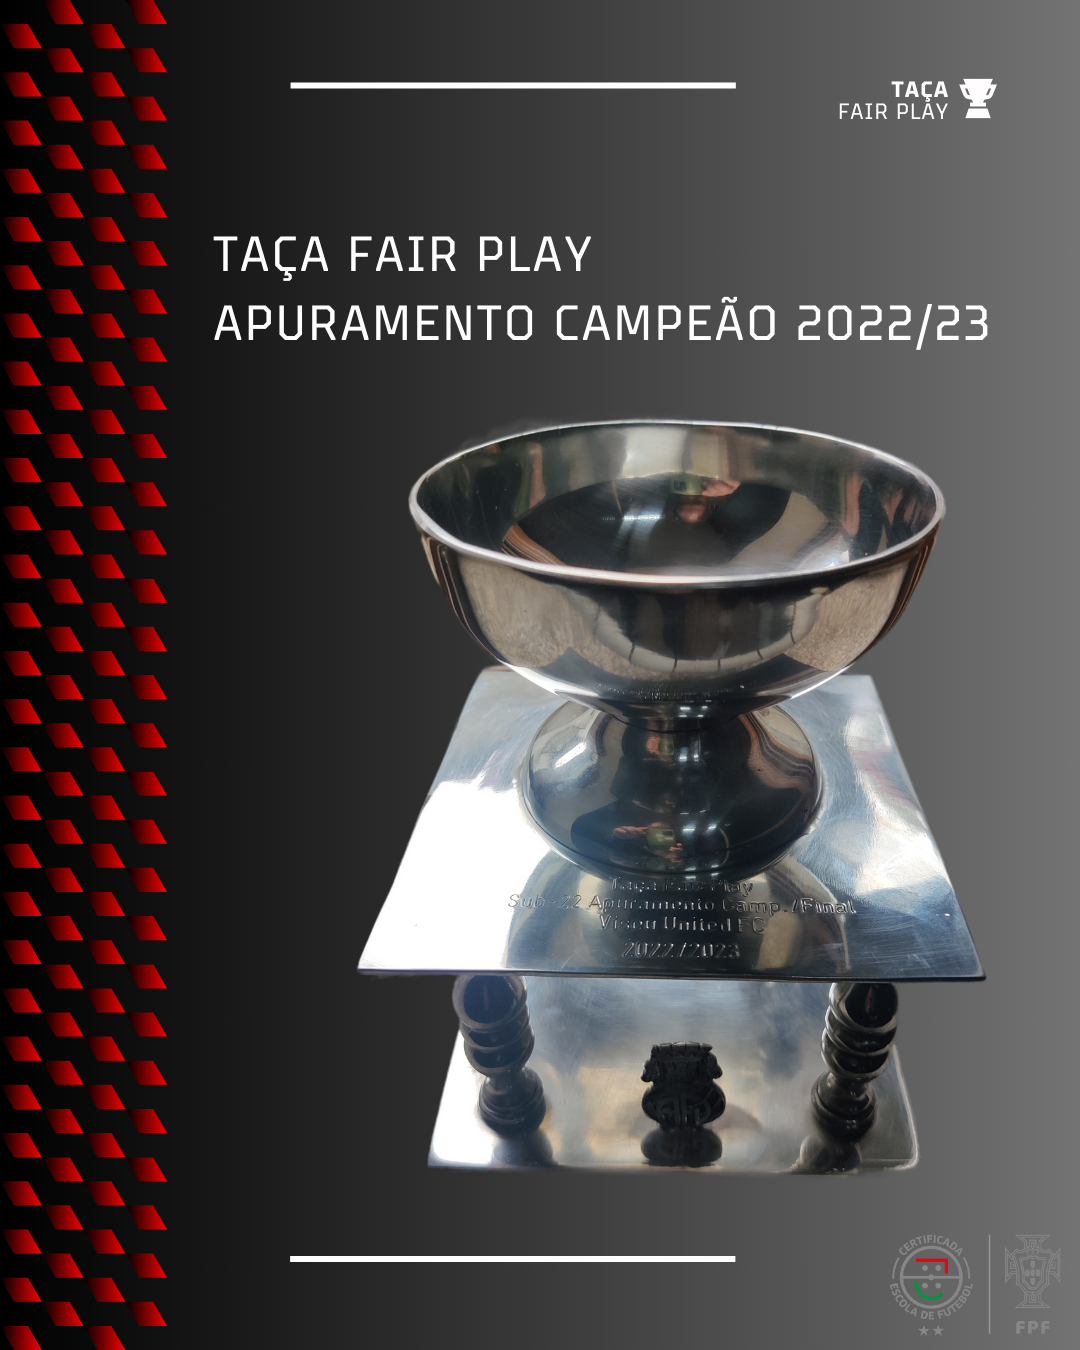 Viseu United recebe Taça Fairplay 2022-23 sub22